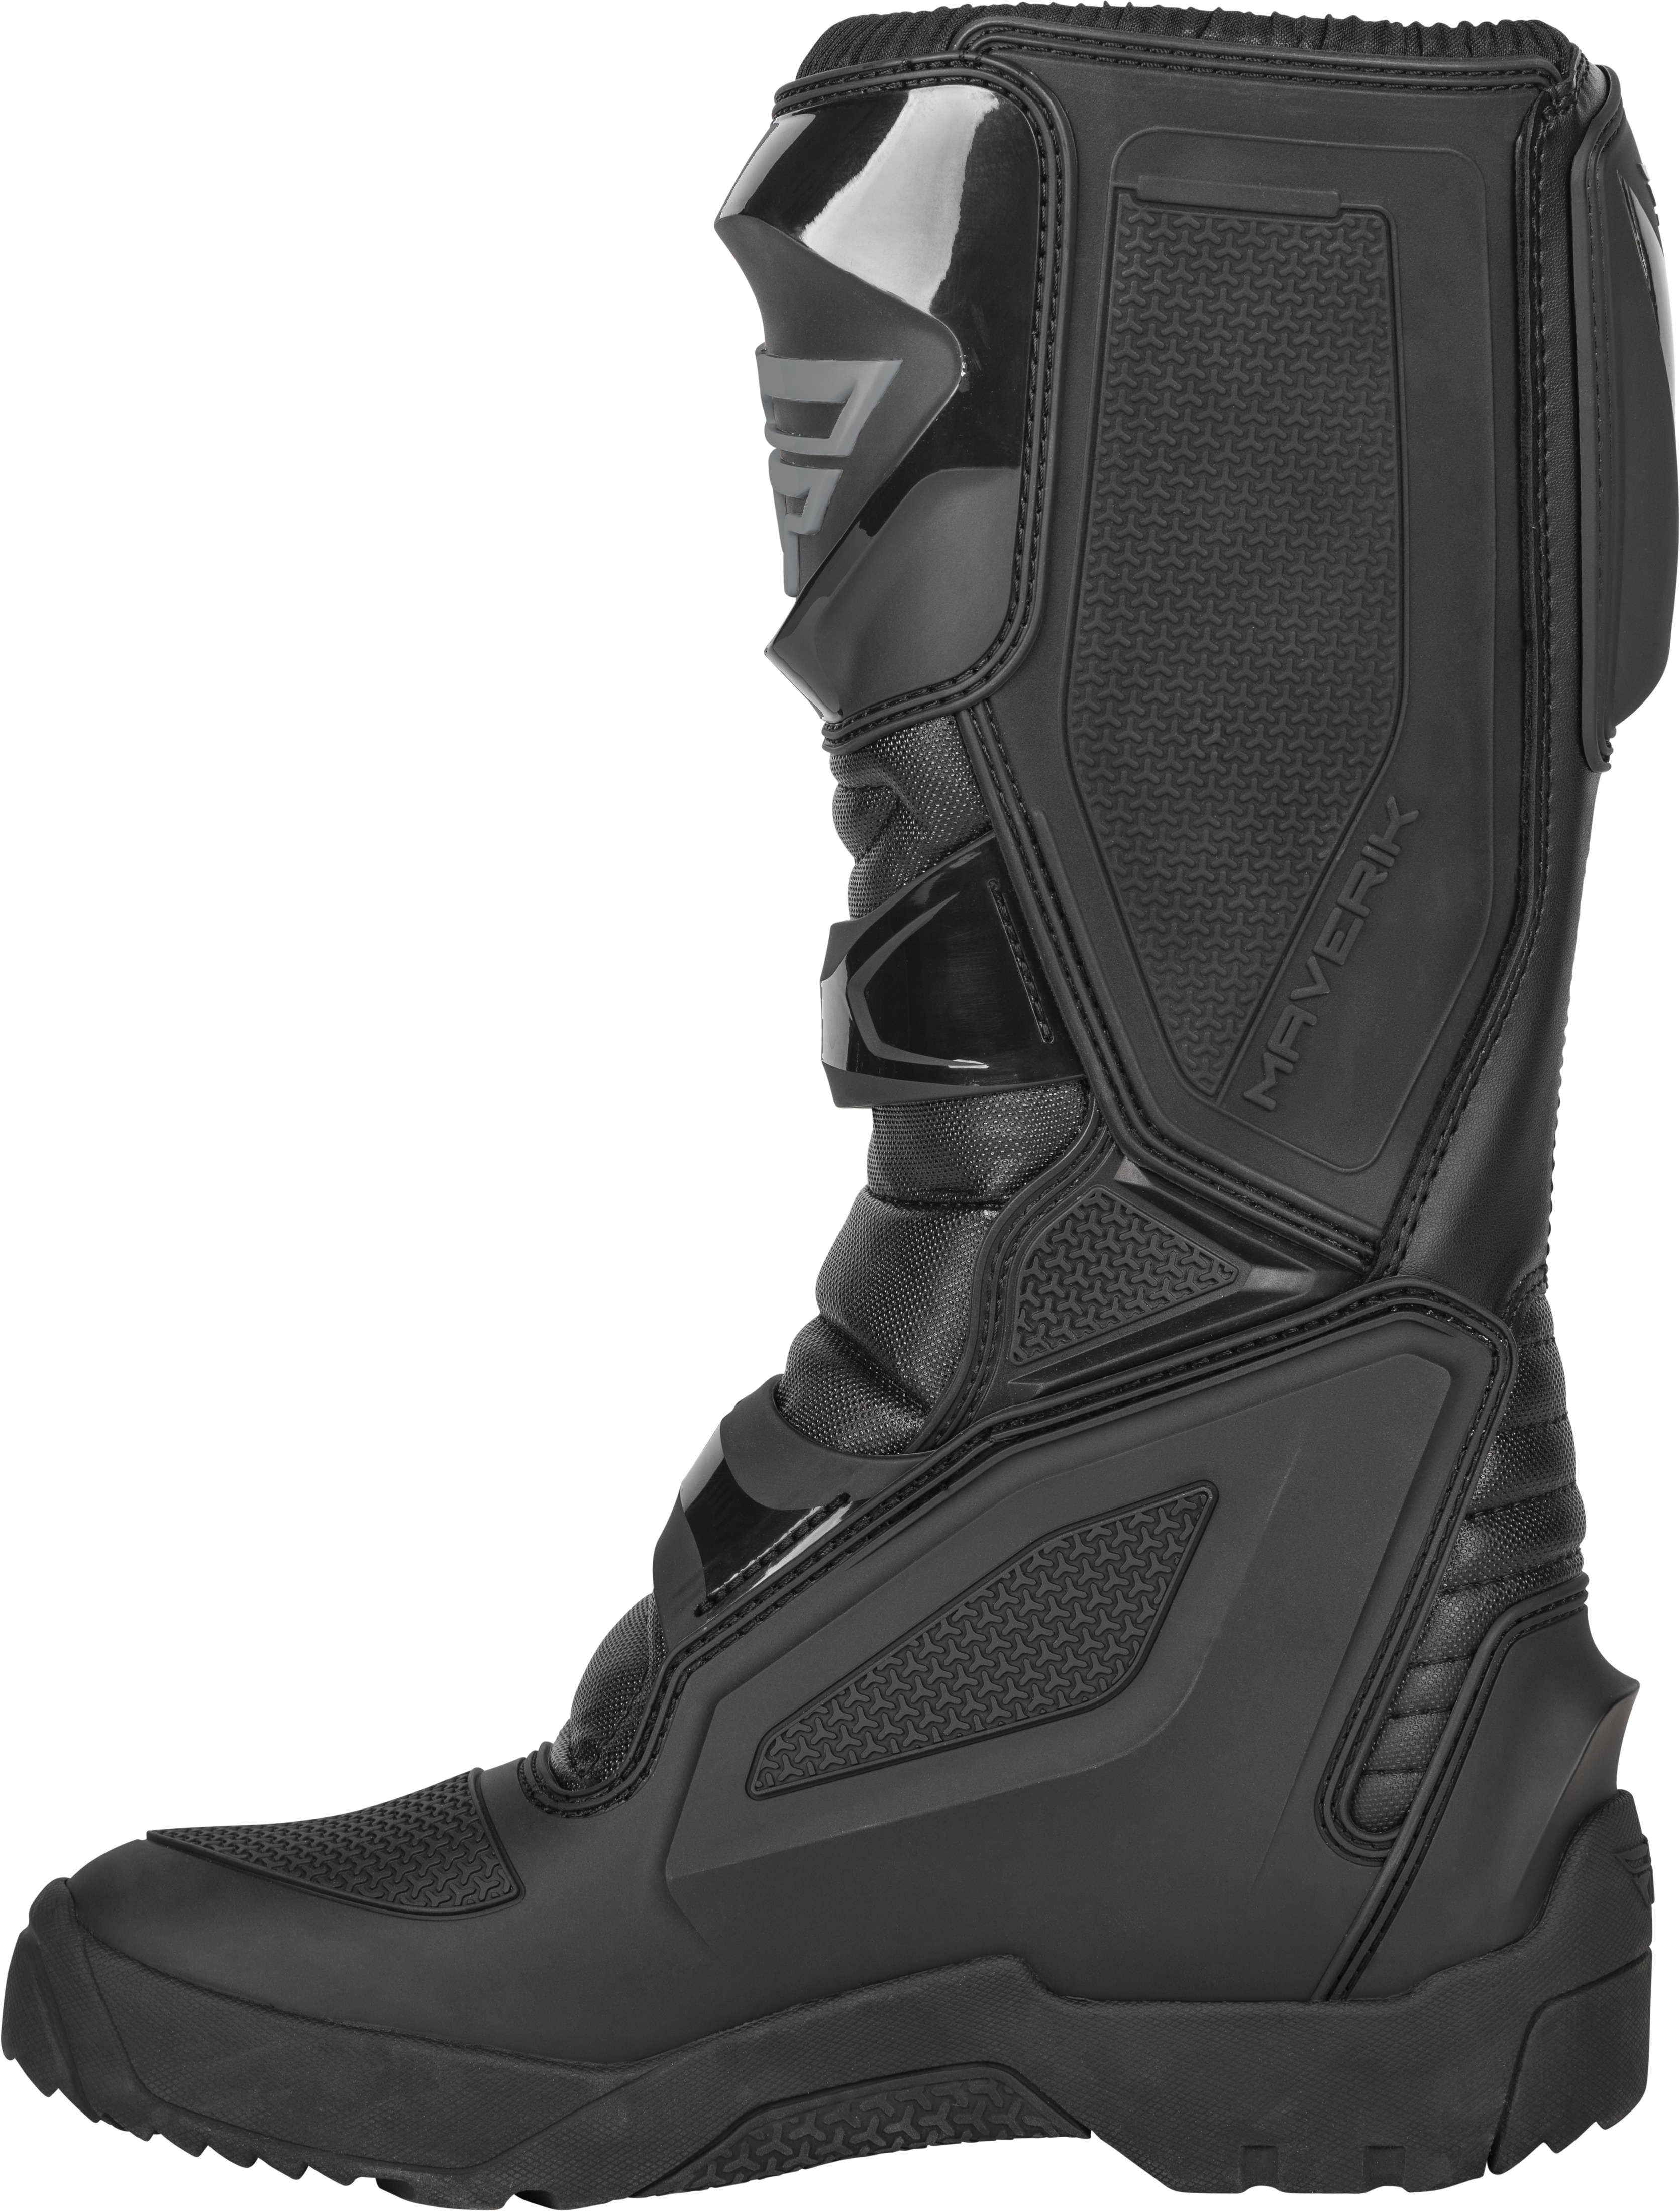 Maverik Enduro Boot Black Size 10 - Click Image to Close